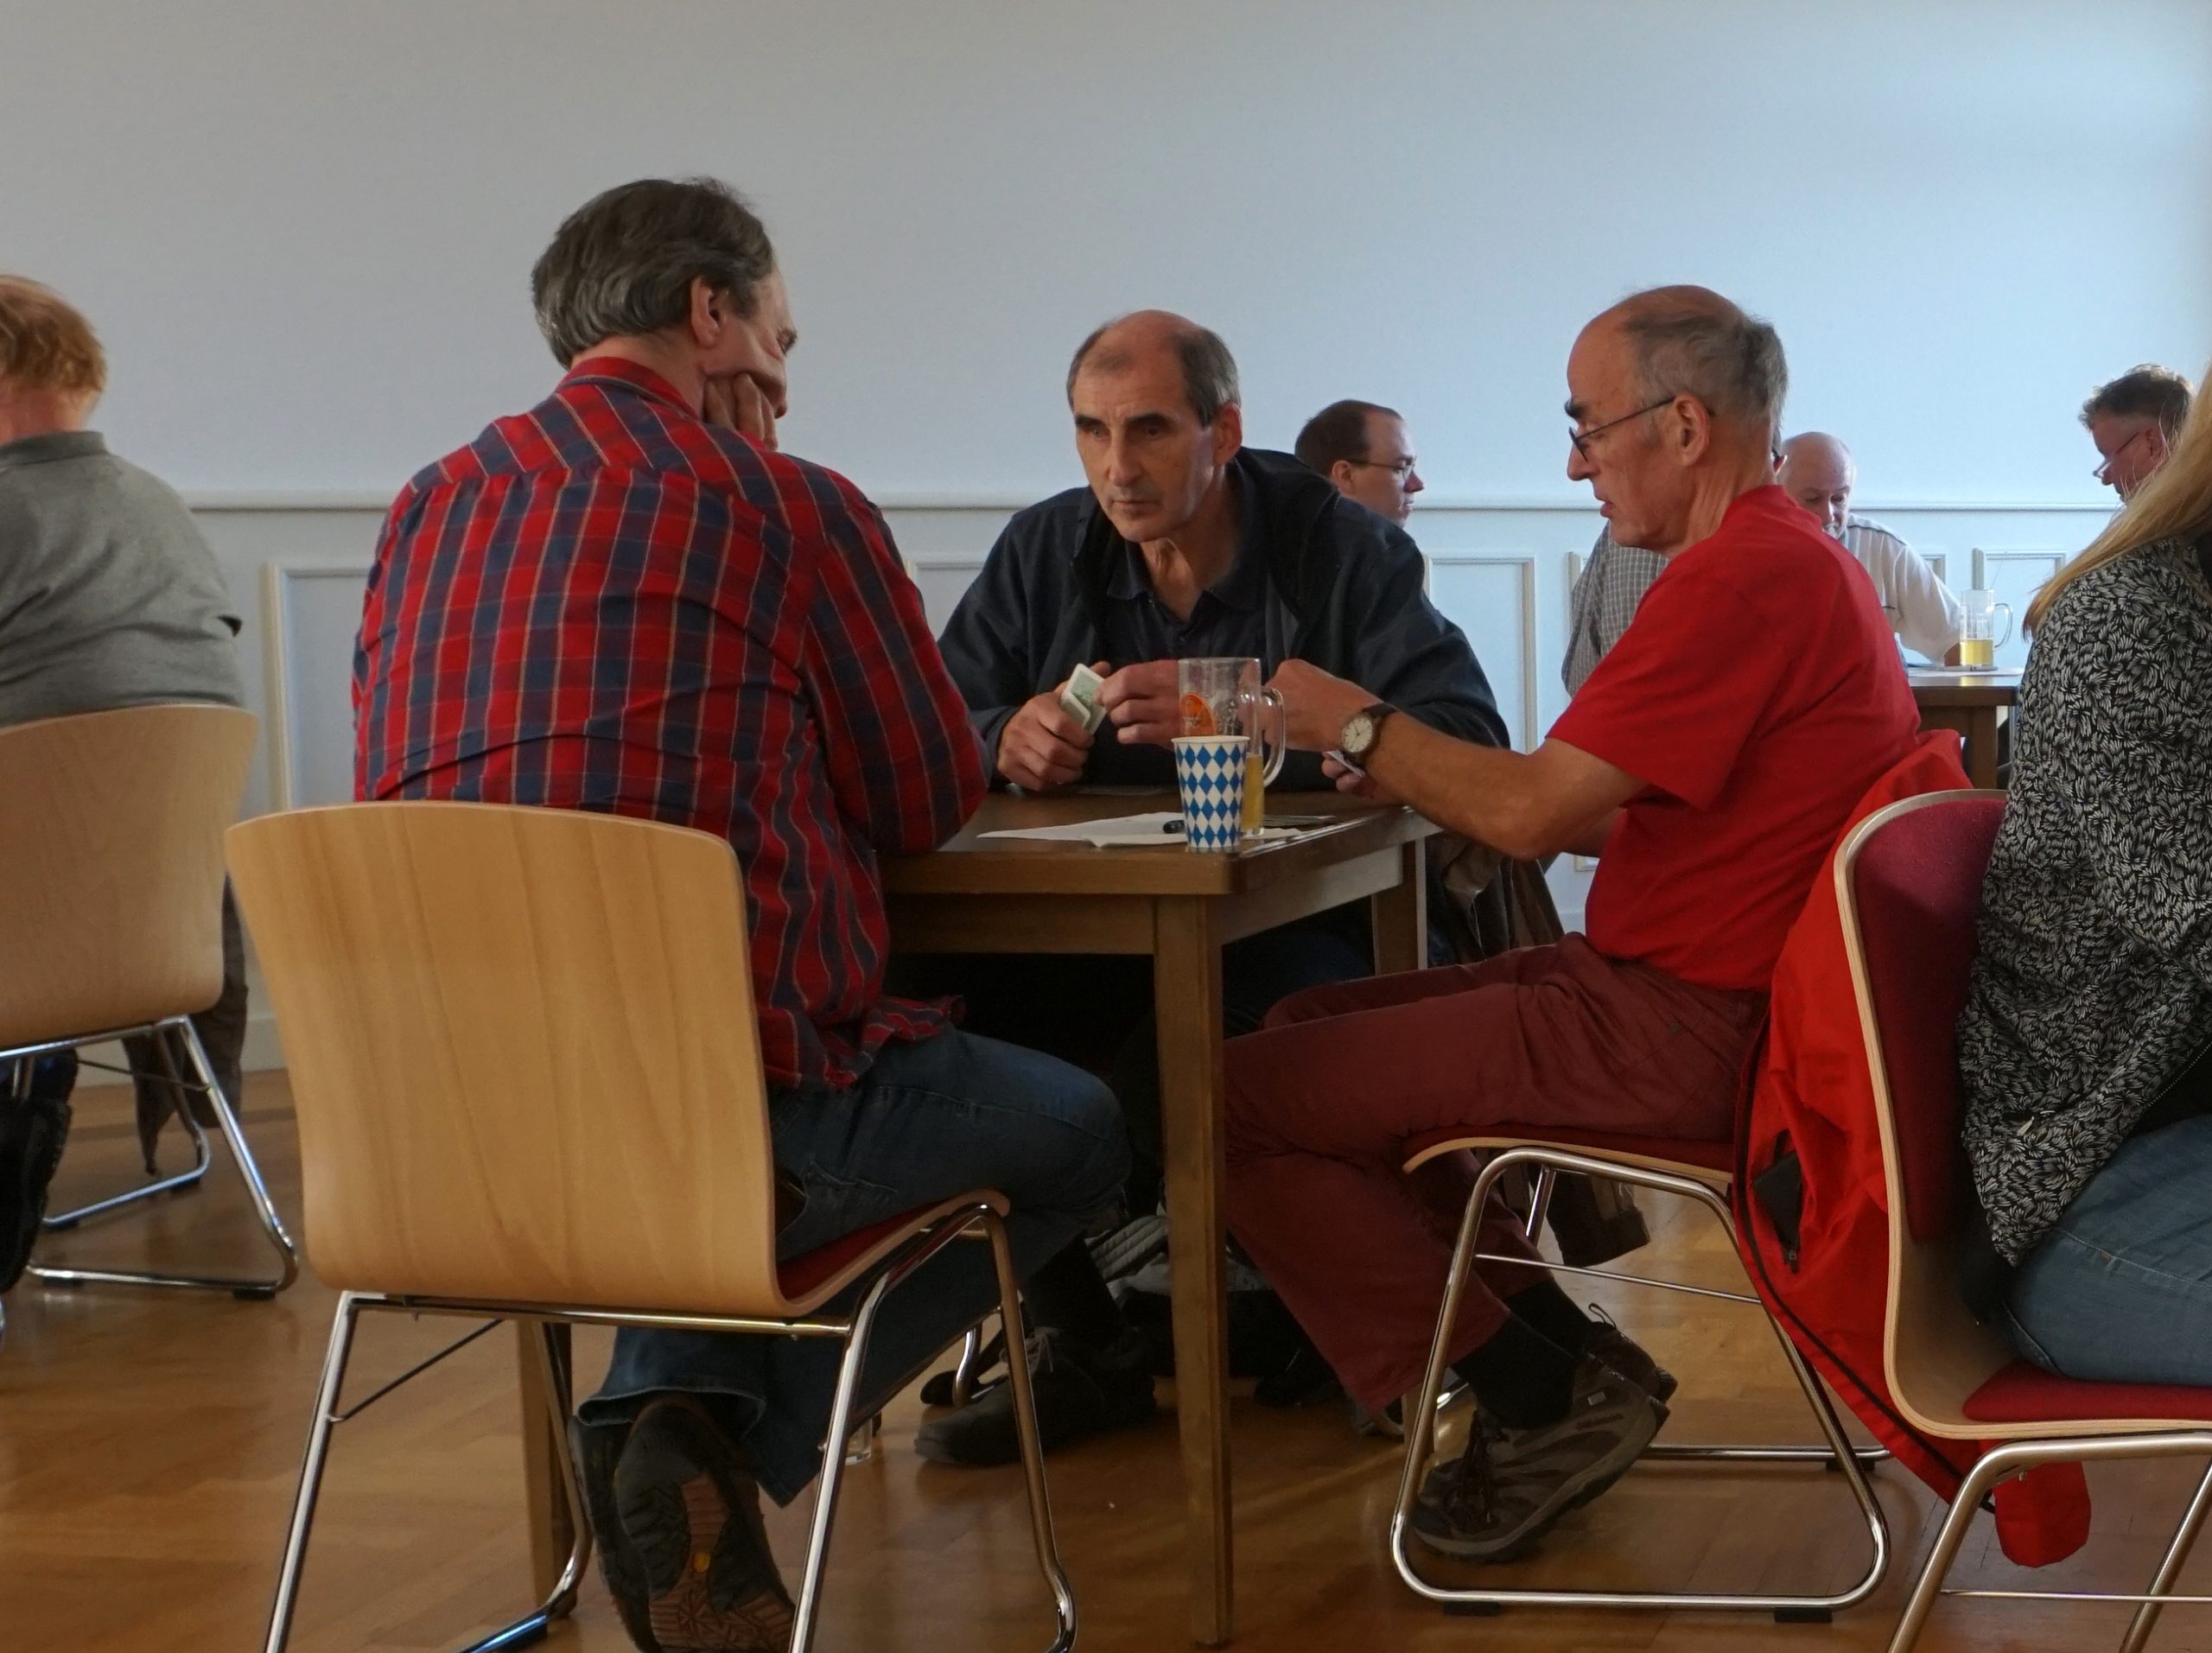 Drei Männer sitzen an einem Tisch und spielen Karten. Ein Herr ist blind und erfühlt die Karten.